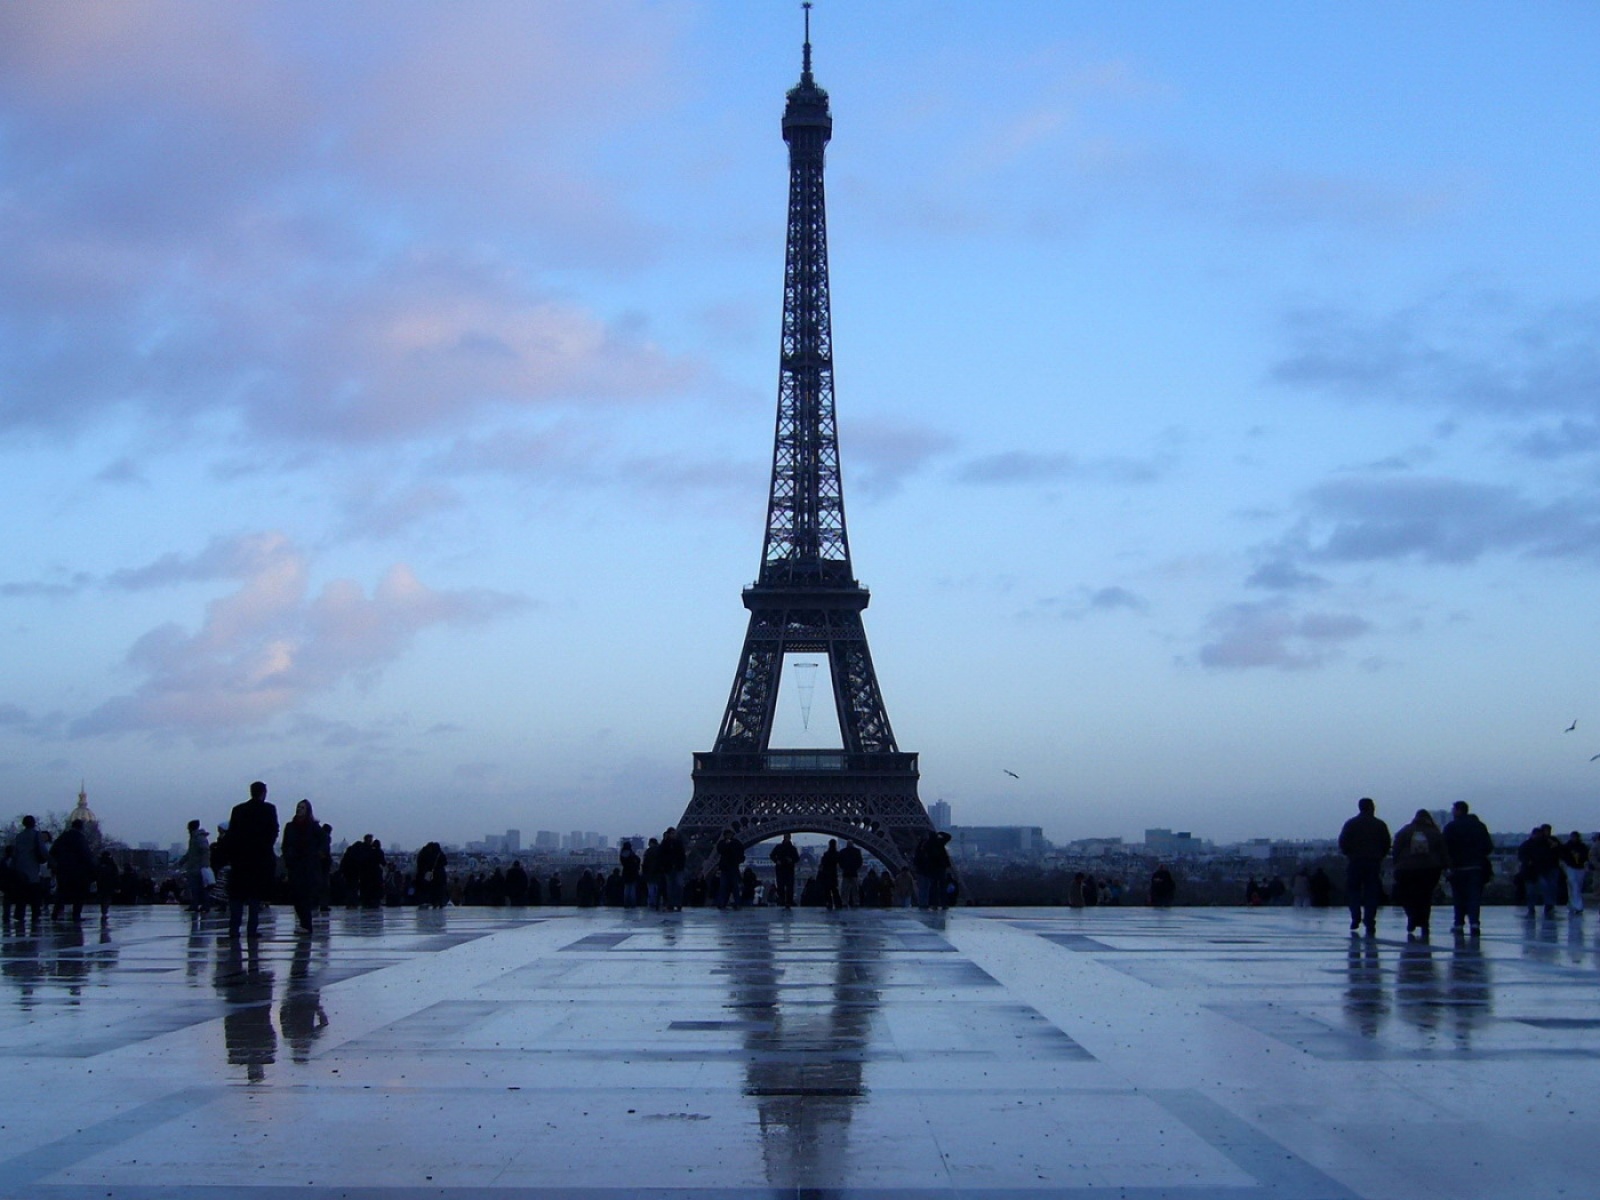 Fond d'ecran Tout Eiffel Paris